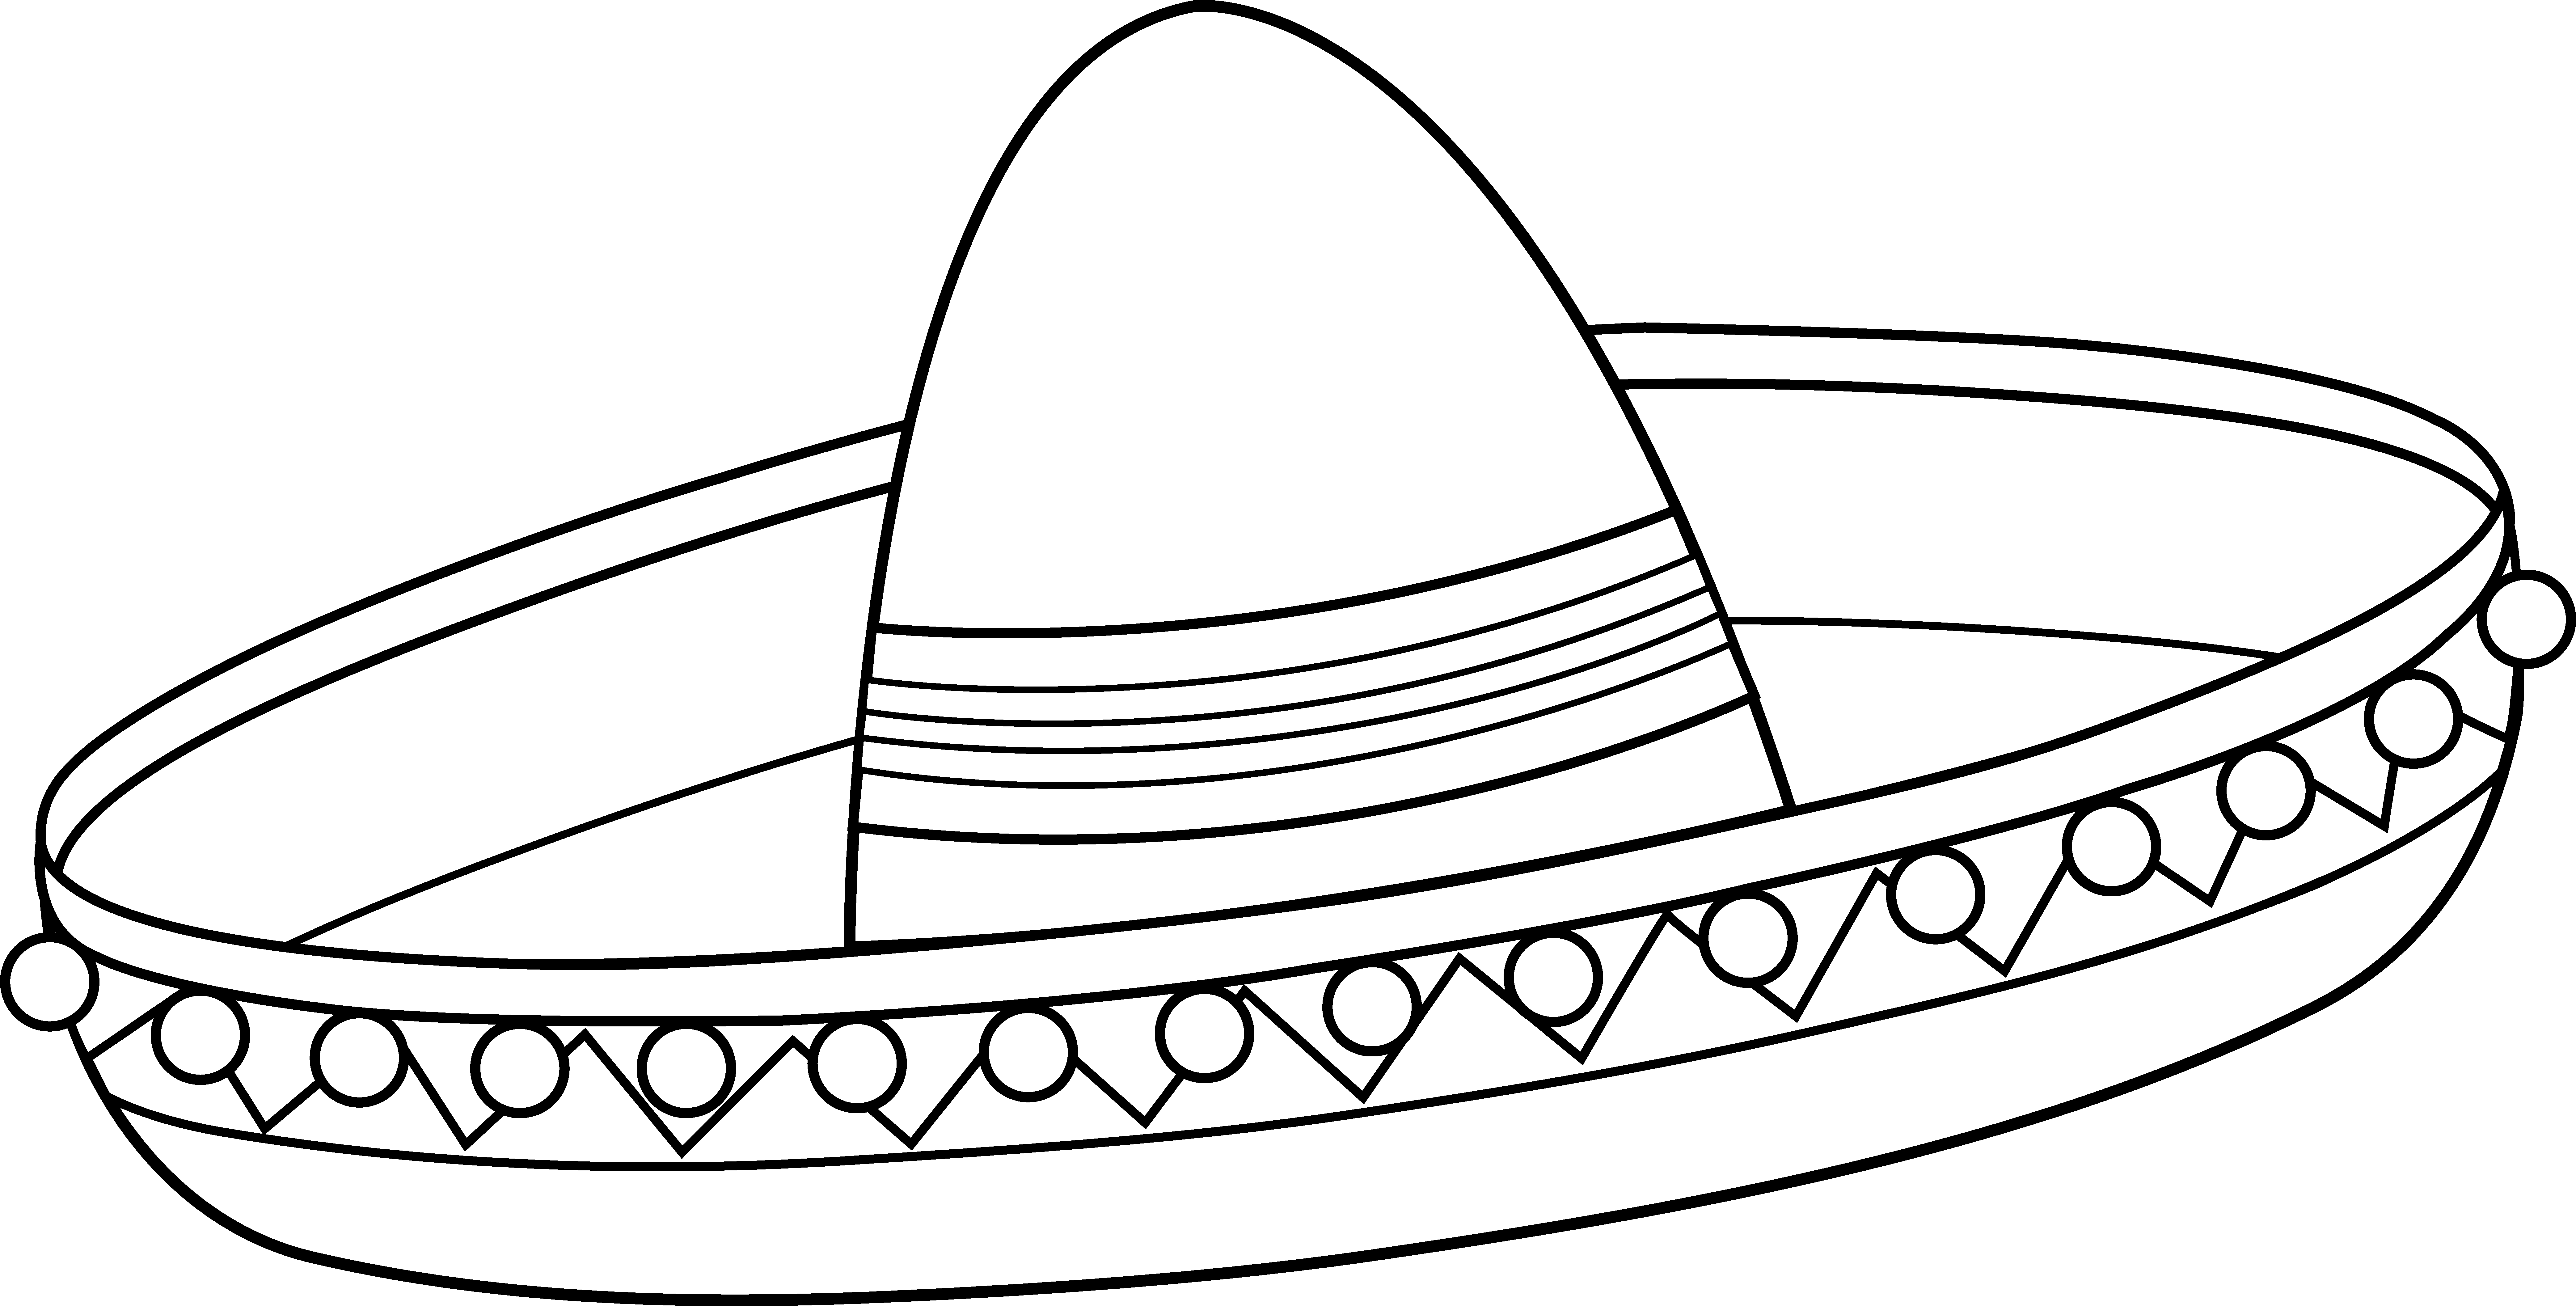 Mexican Sombrero Coloring Page